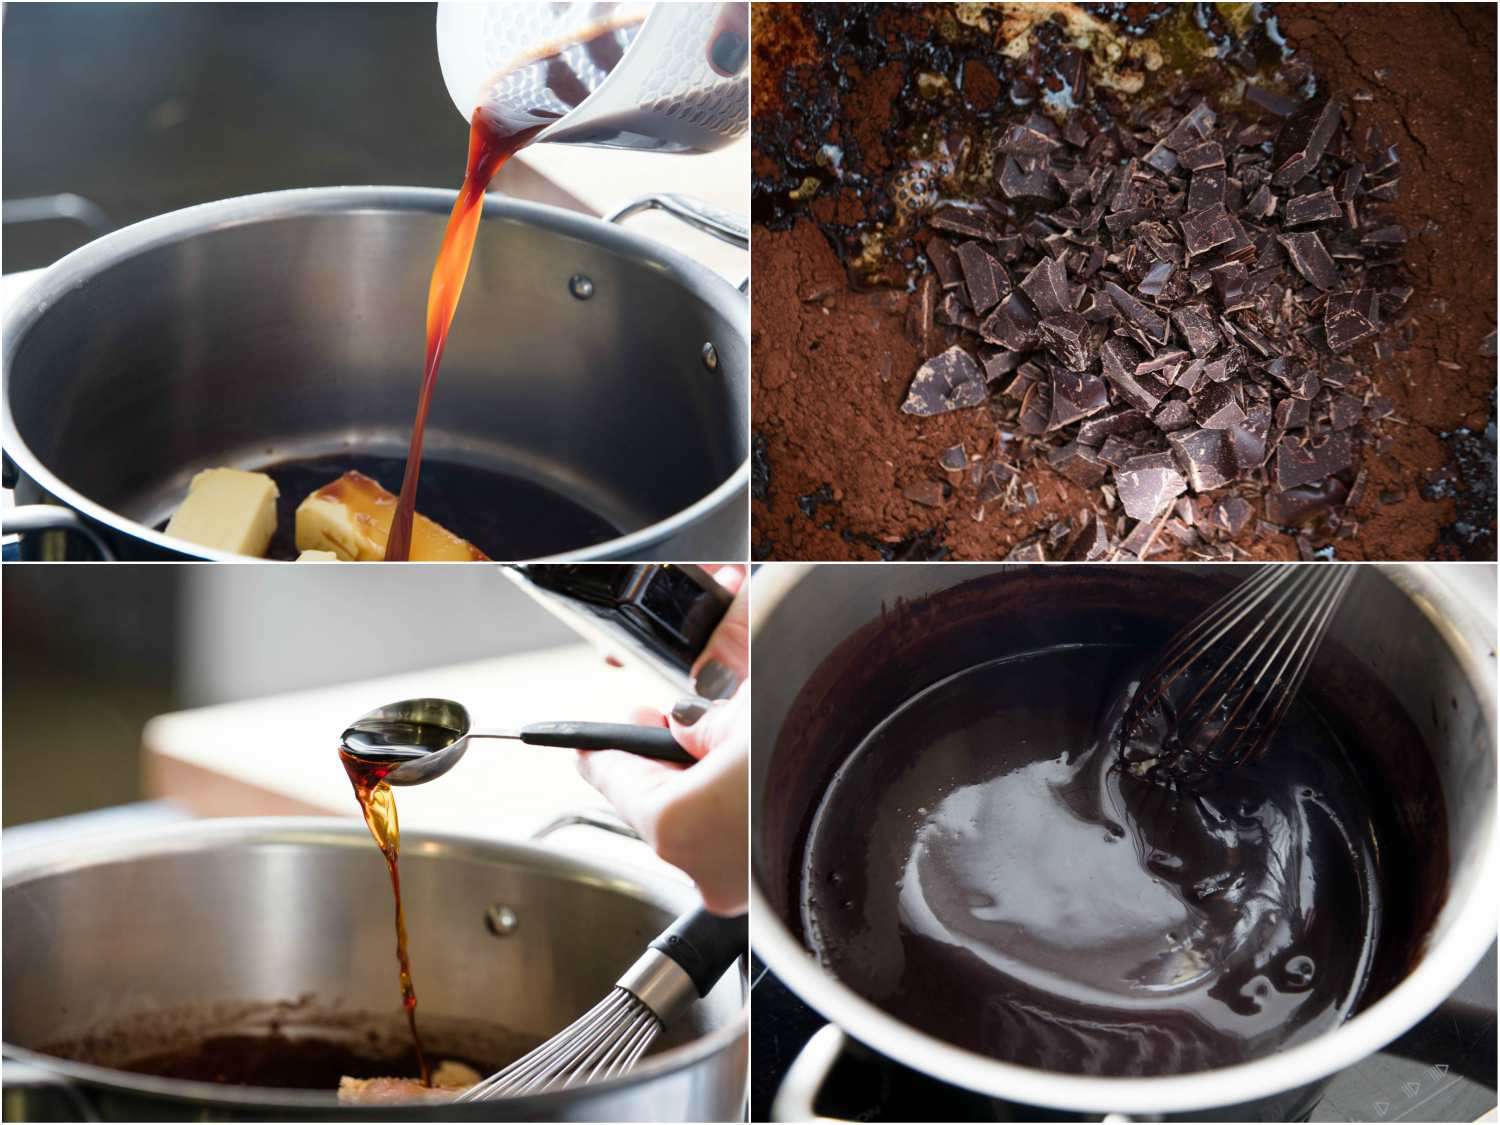 视频显示，巧克力蛋糕融化了，搅拌在面粉里，搅拌巧克力蛋糕和面粉。